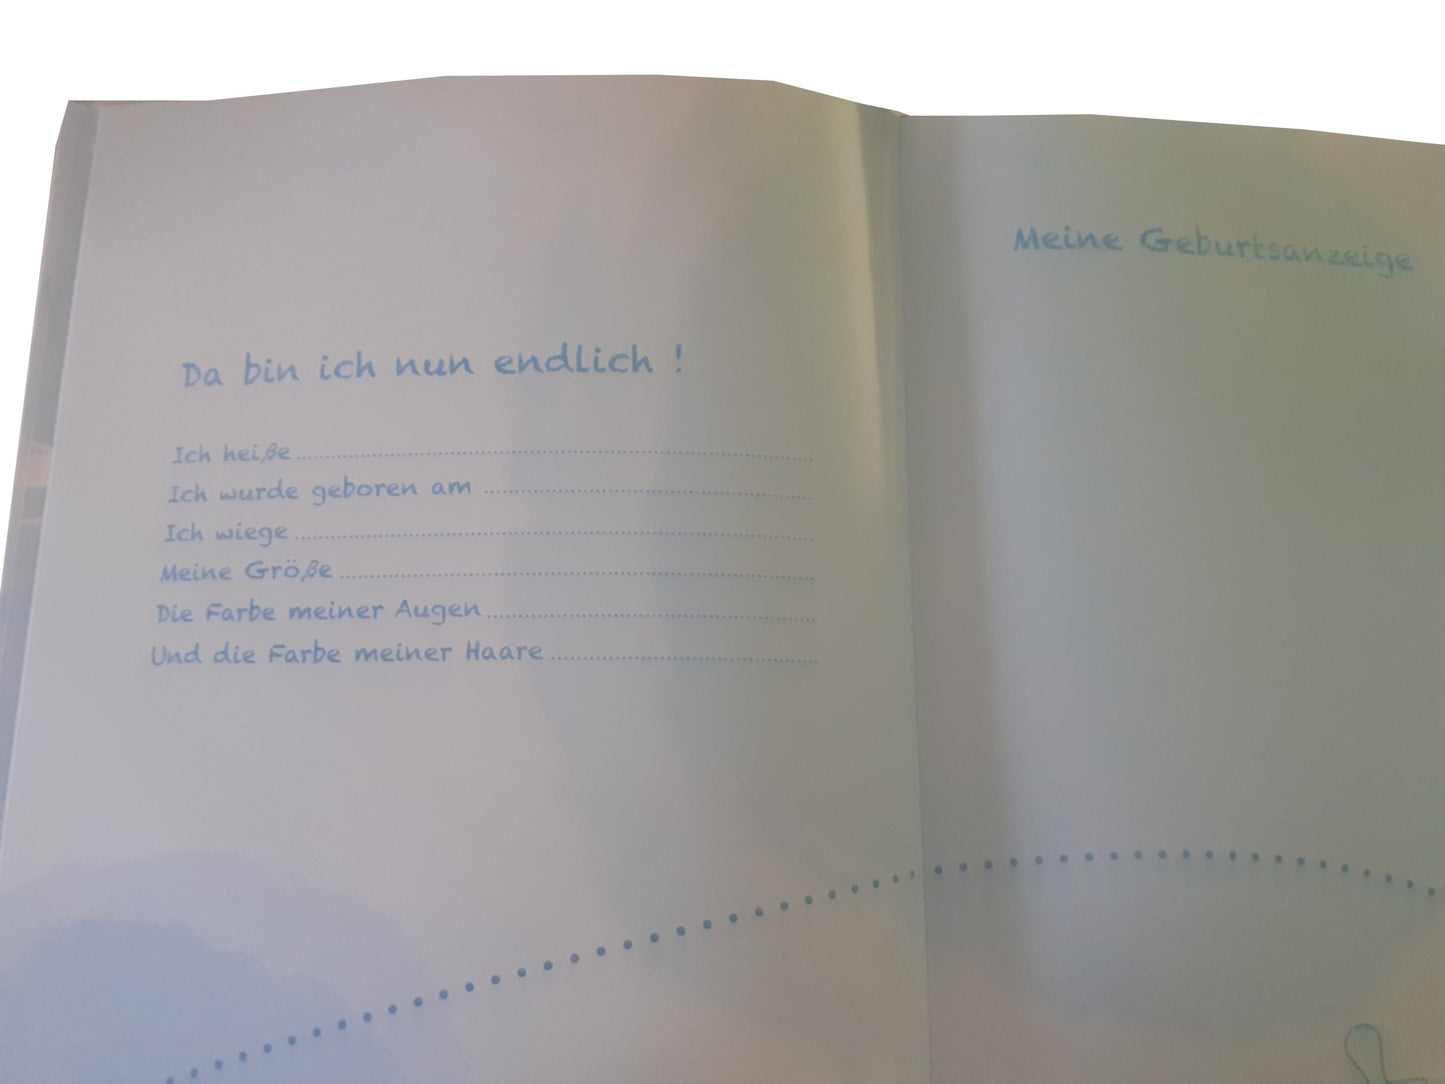 Hama Kinder Baby Tagebuch "Kleiner Hase" Buch Geburt Babybuch Tagebuch Geschenk